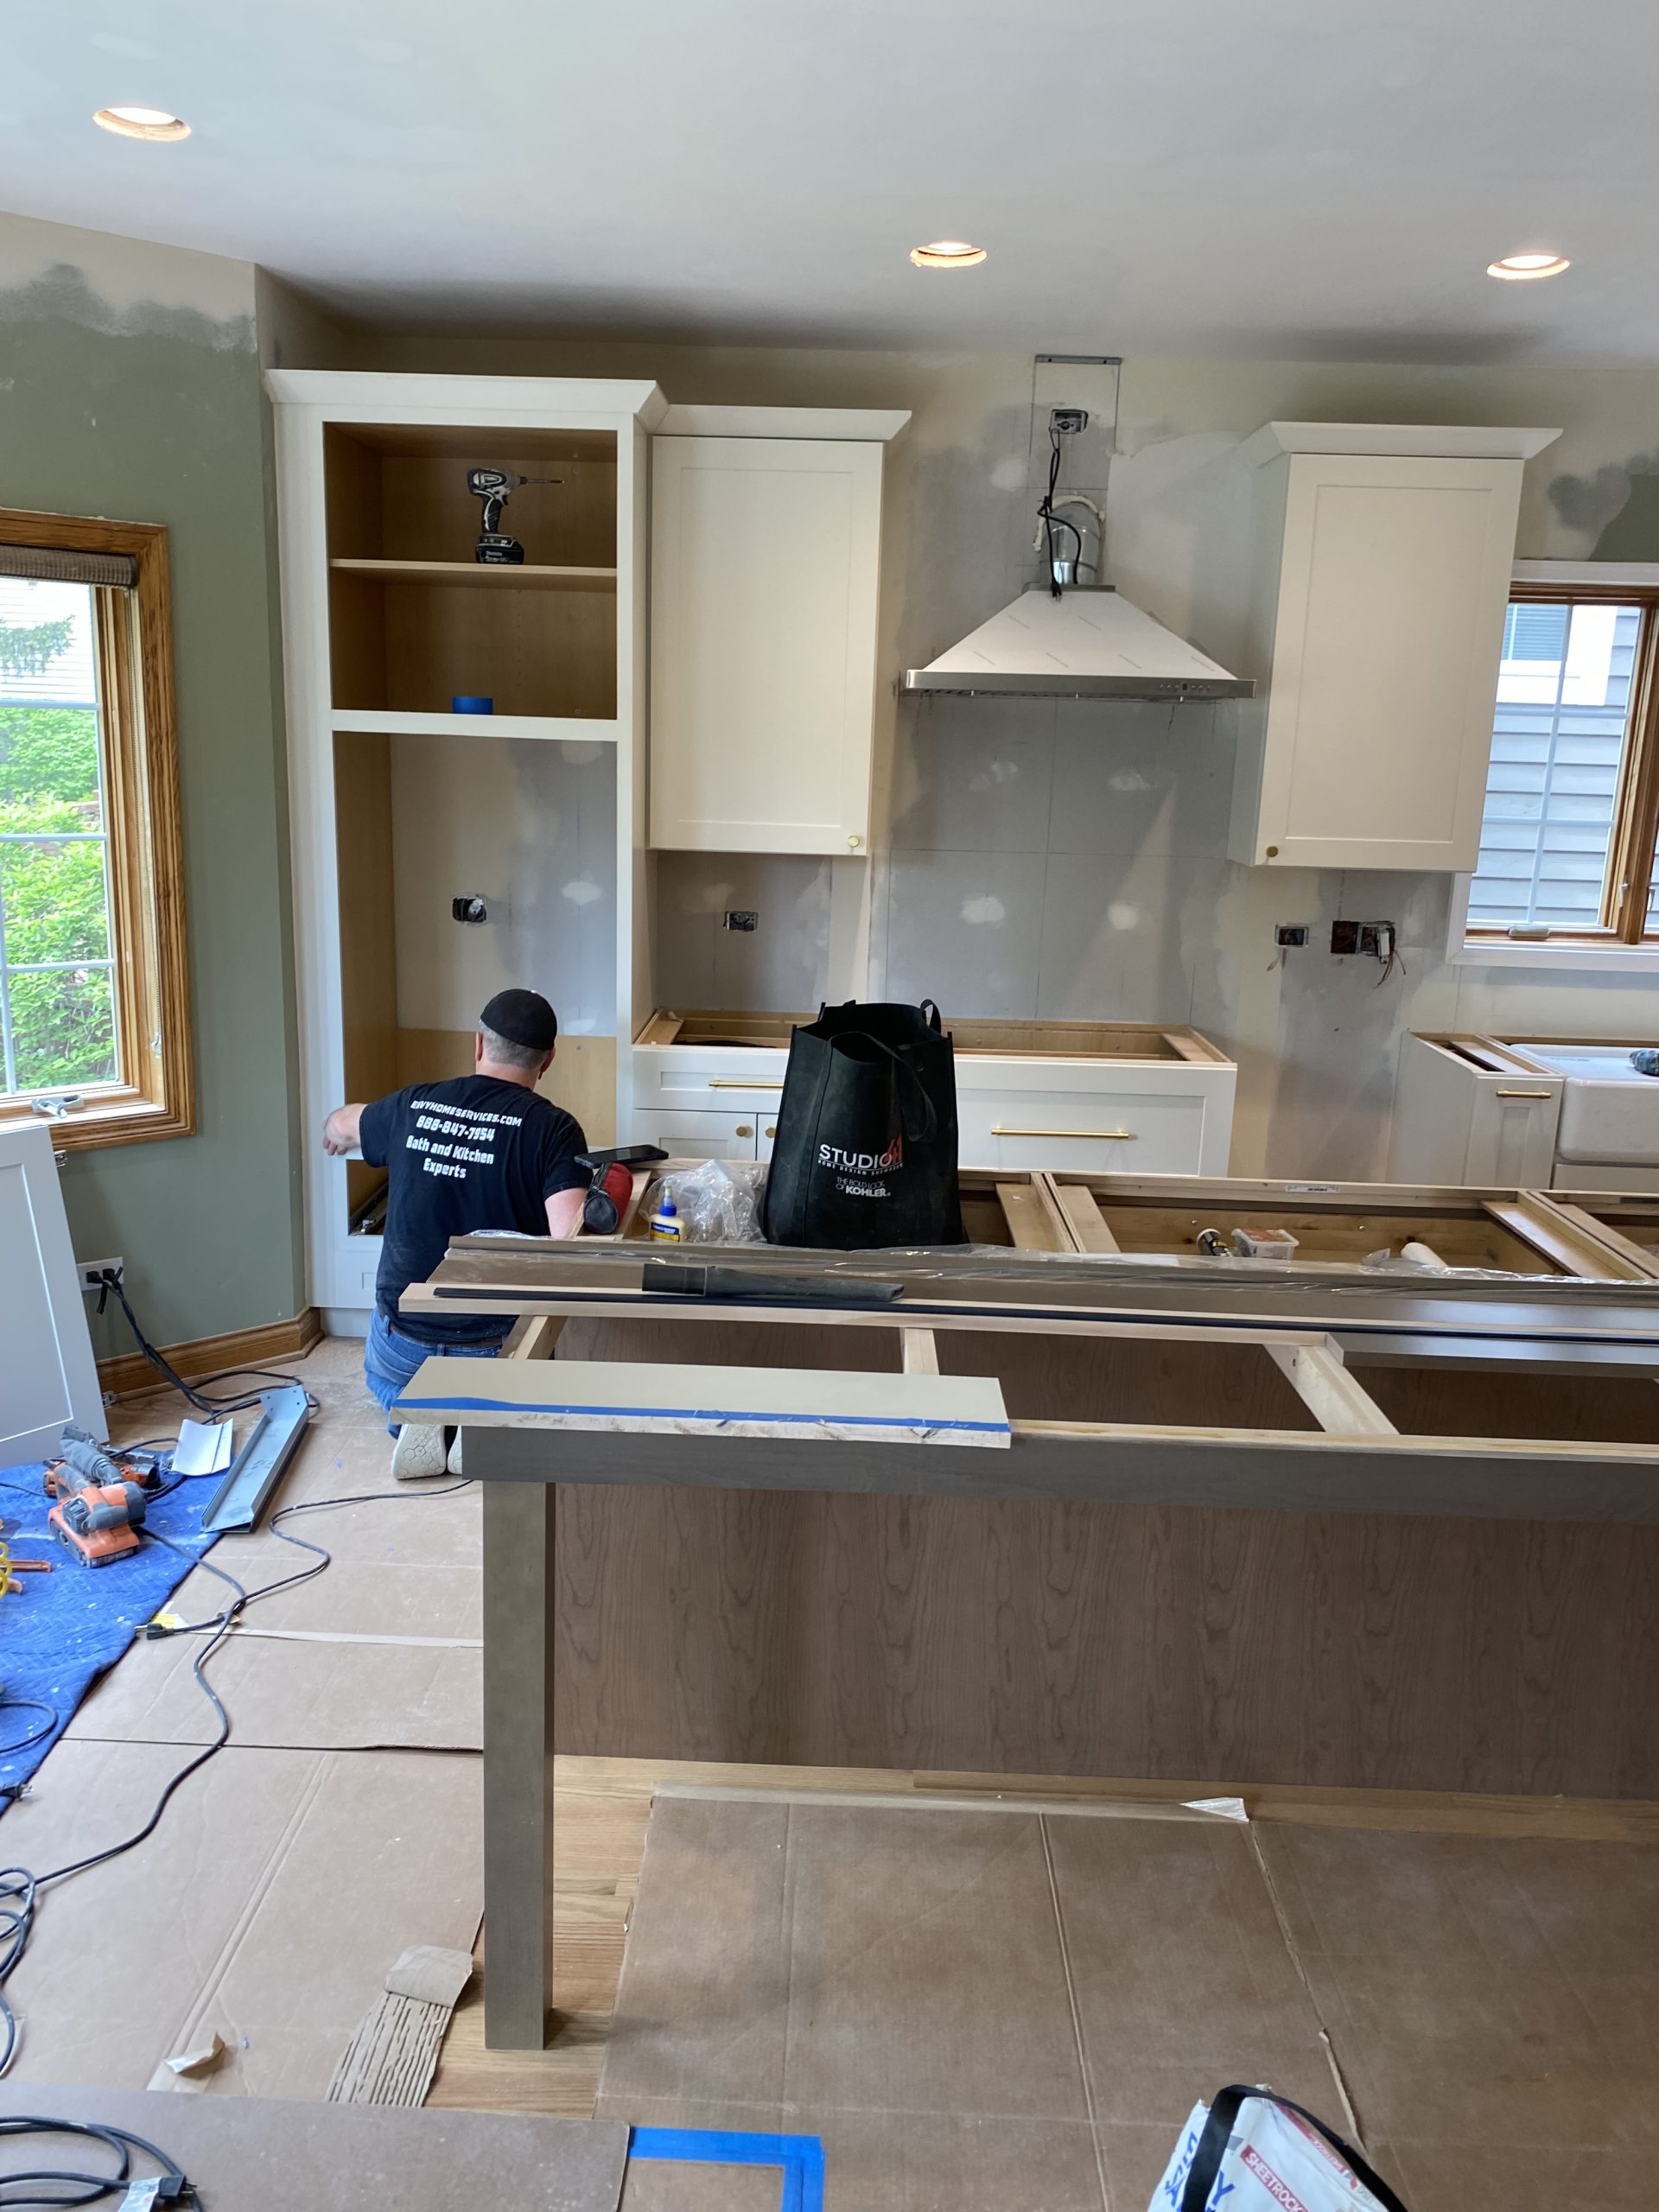 In Progress | Glenview, IL Kitchen Remodel